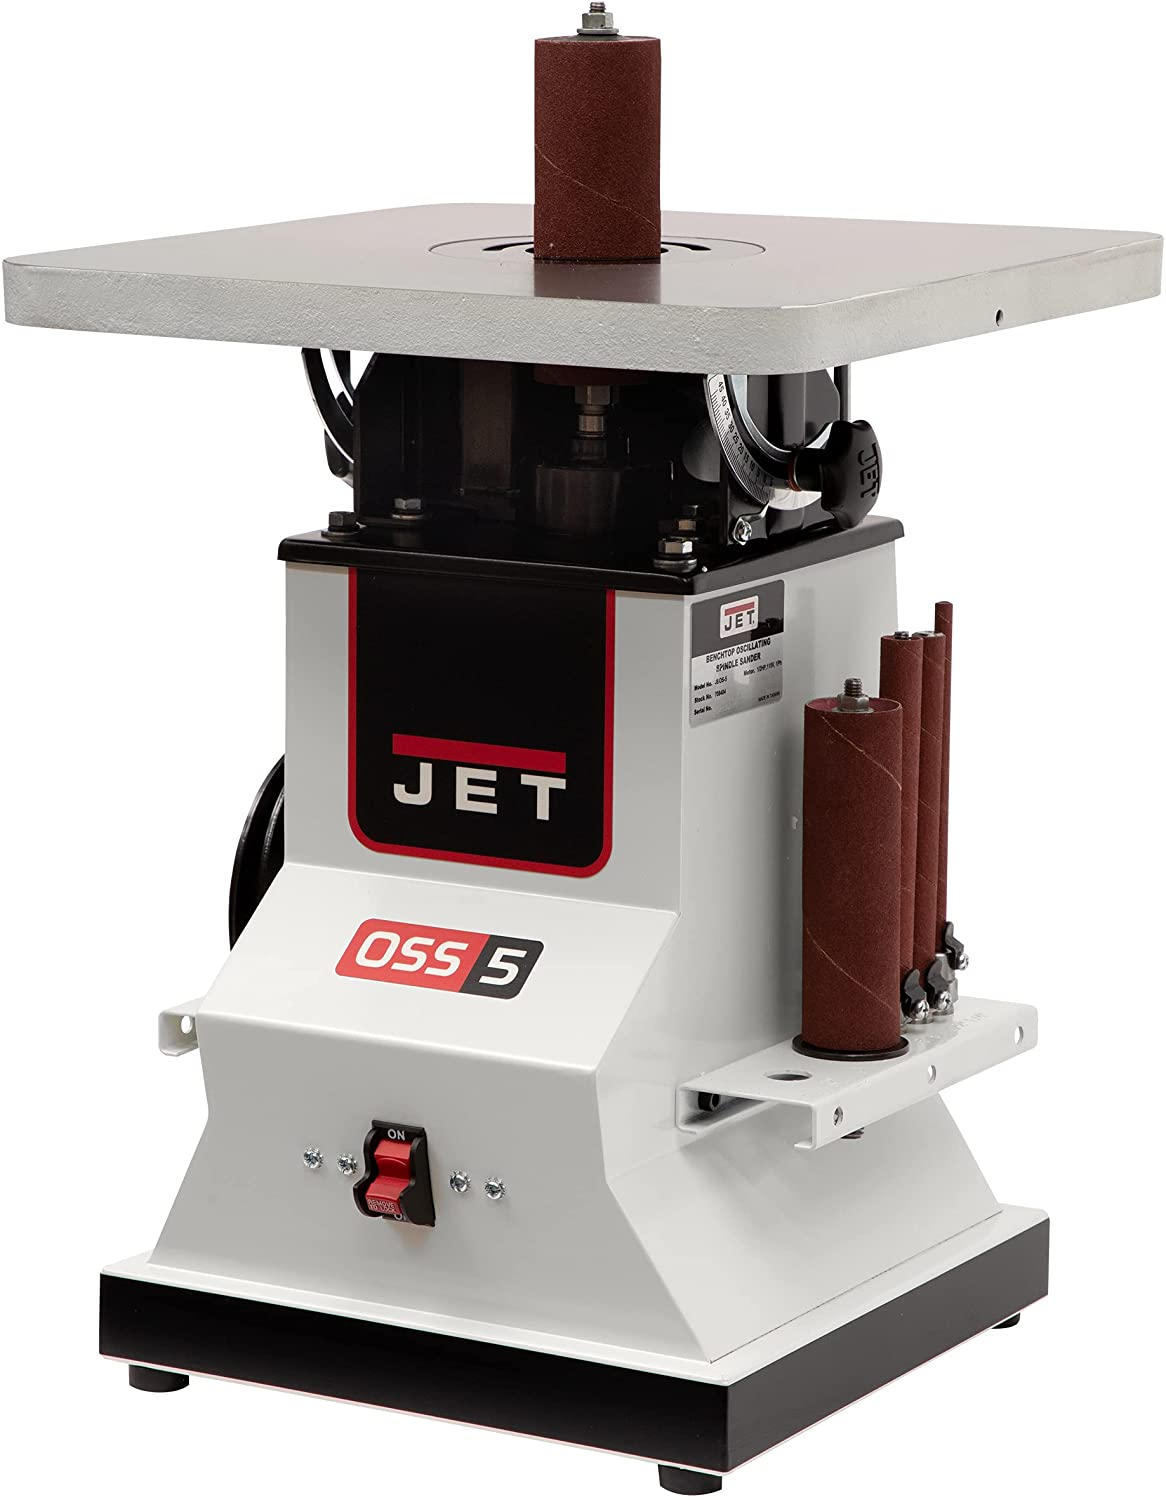 JET JBOS-5 Benchtop Oscillating Spindle Sander, 1/2 HP $506.85